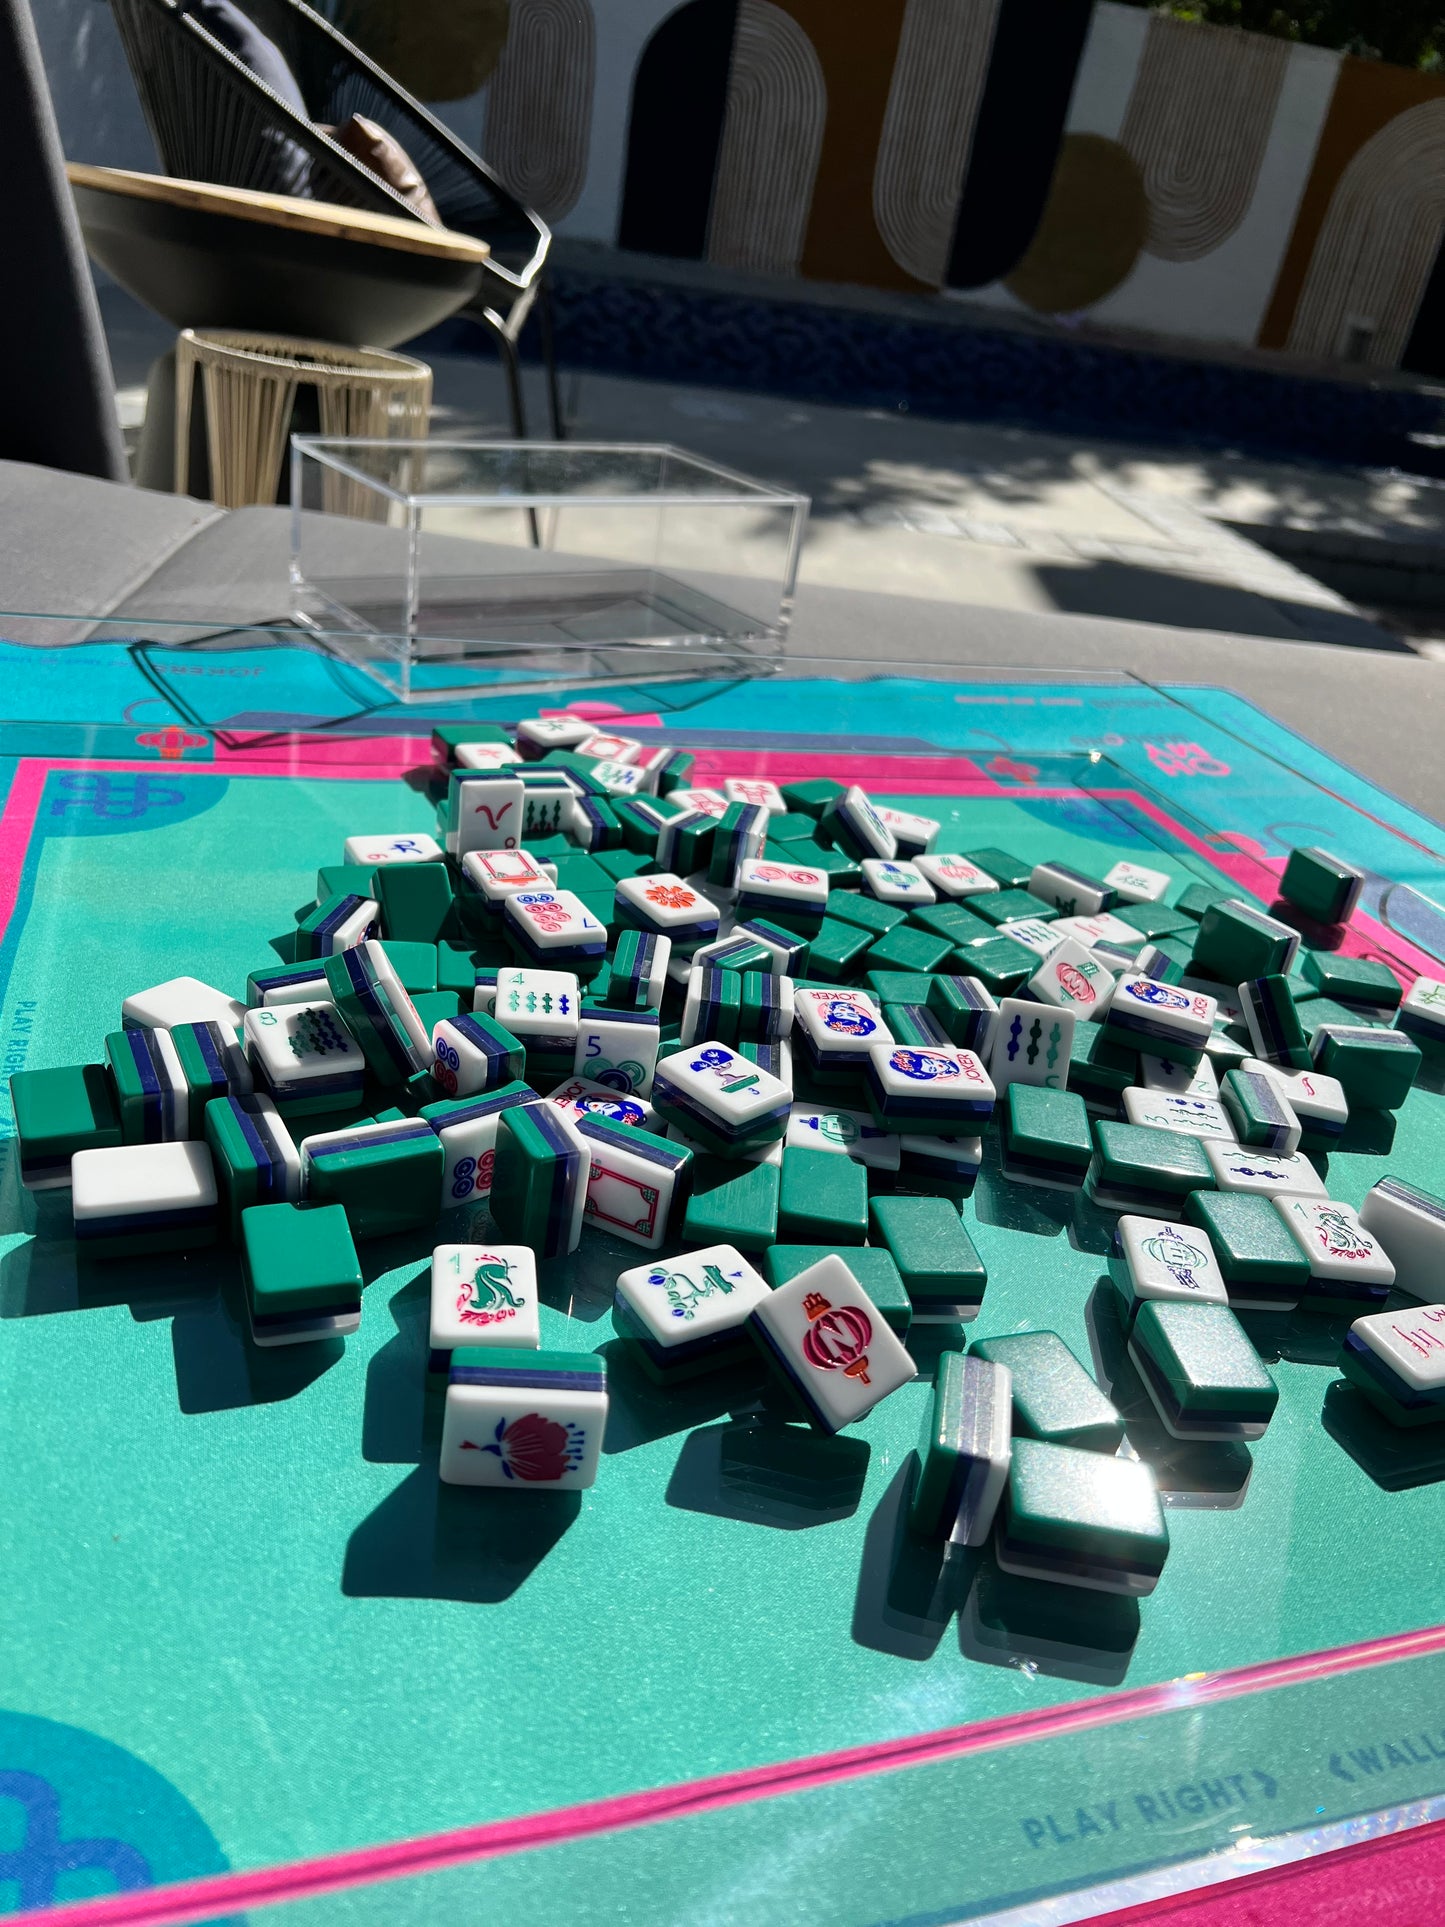 Shangri-la : Mahjong Tile Set